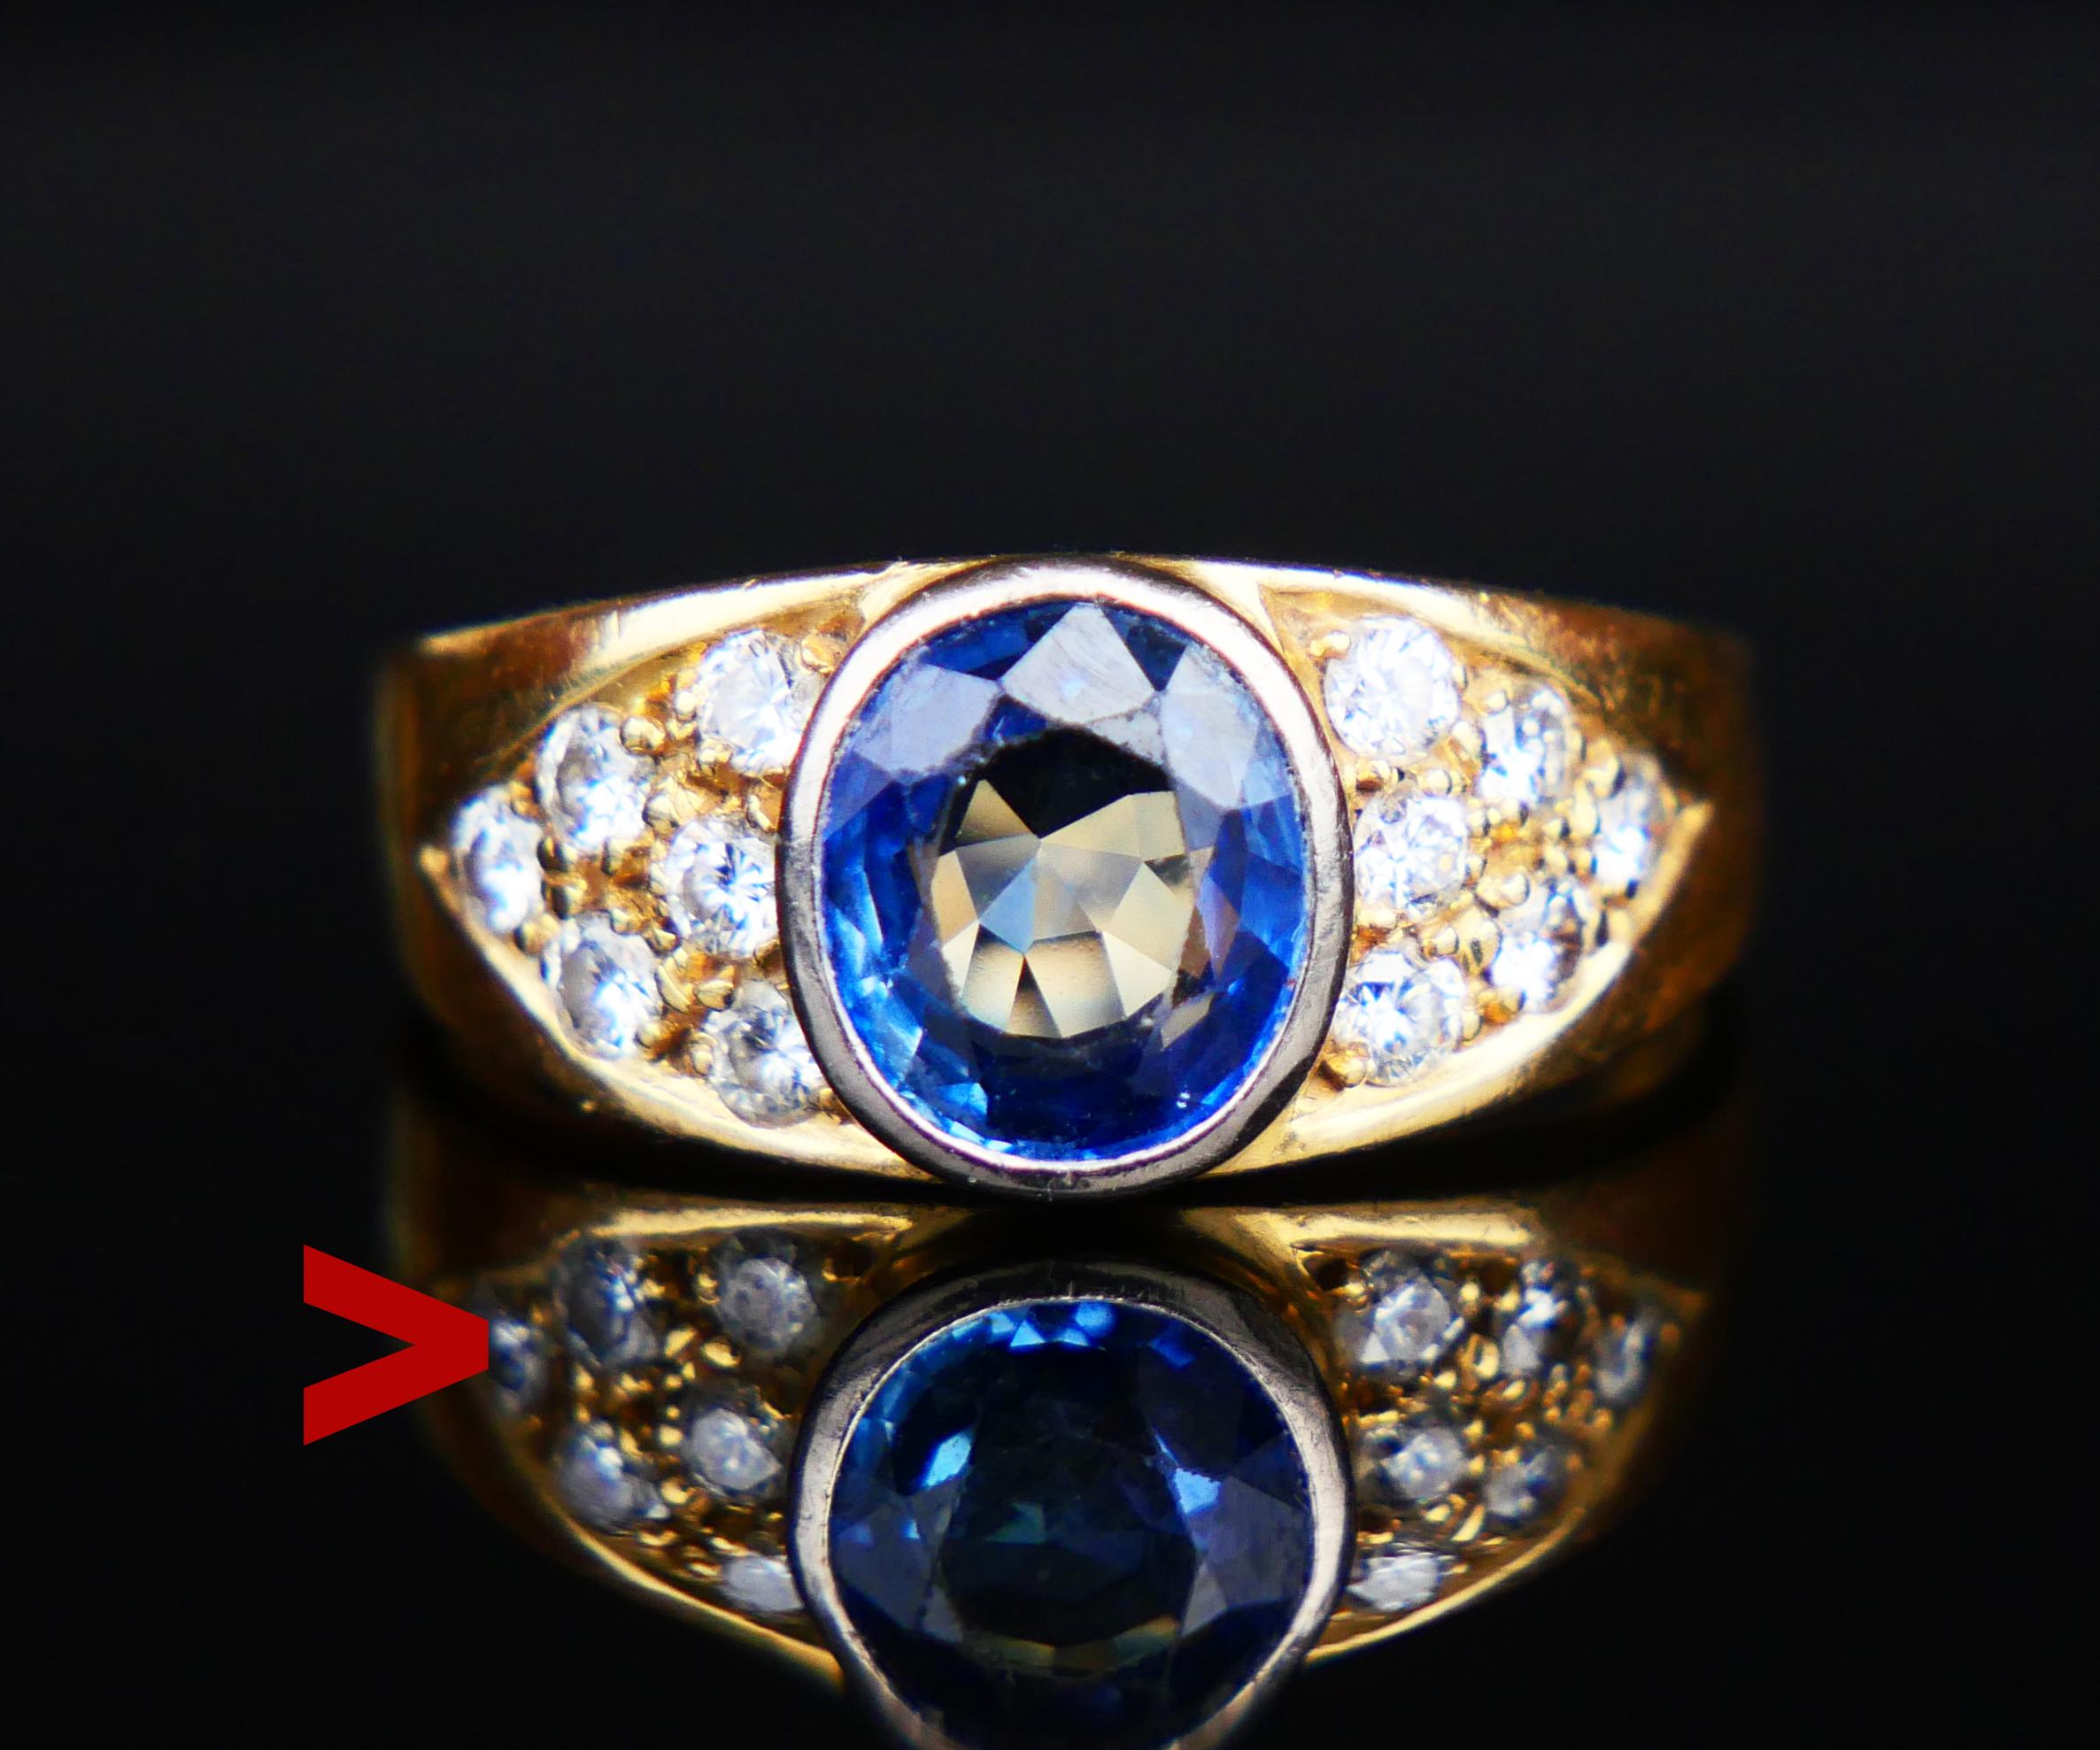 Ring mit schönem natürlichem blauem Saphir, akzentuiert mit alten Diamanten im Brillantschliff.

Vintage Everyday Typ Ring, gestempelt 18K und 756.

Das Band ist an der breitesten Stelle 8 mm breit und besteht aus massivem Gelbgold.

Hellblauer